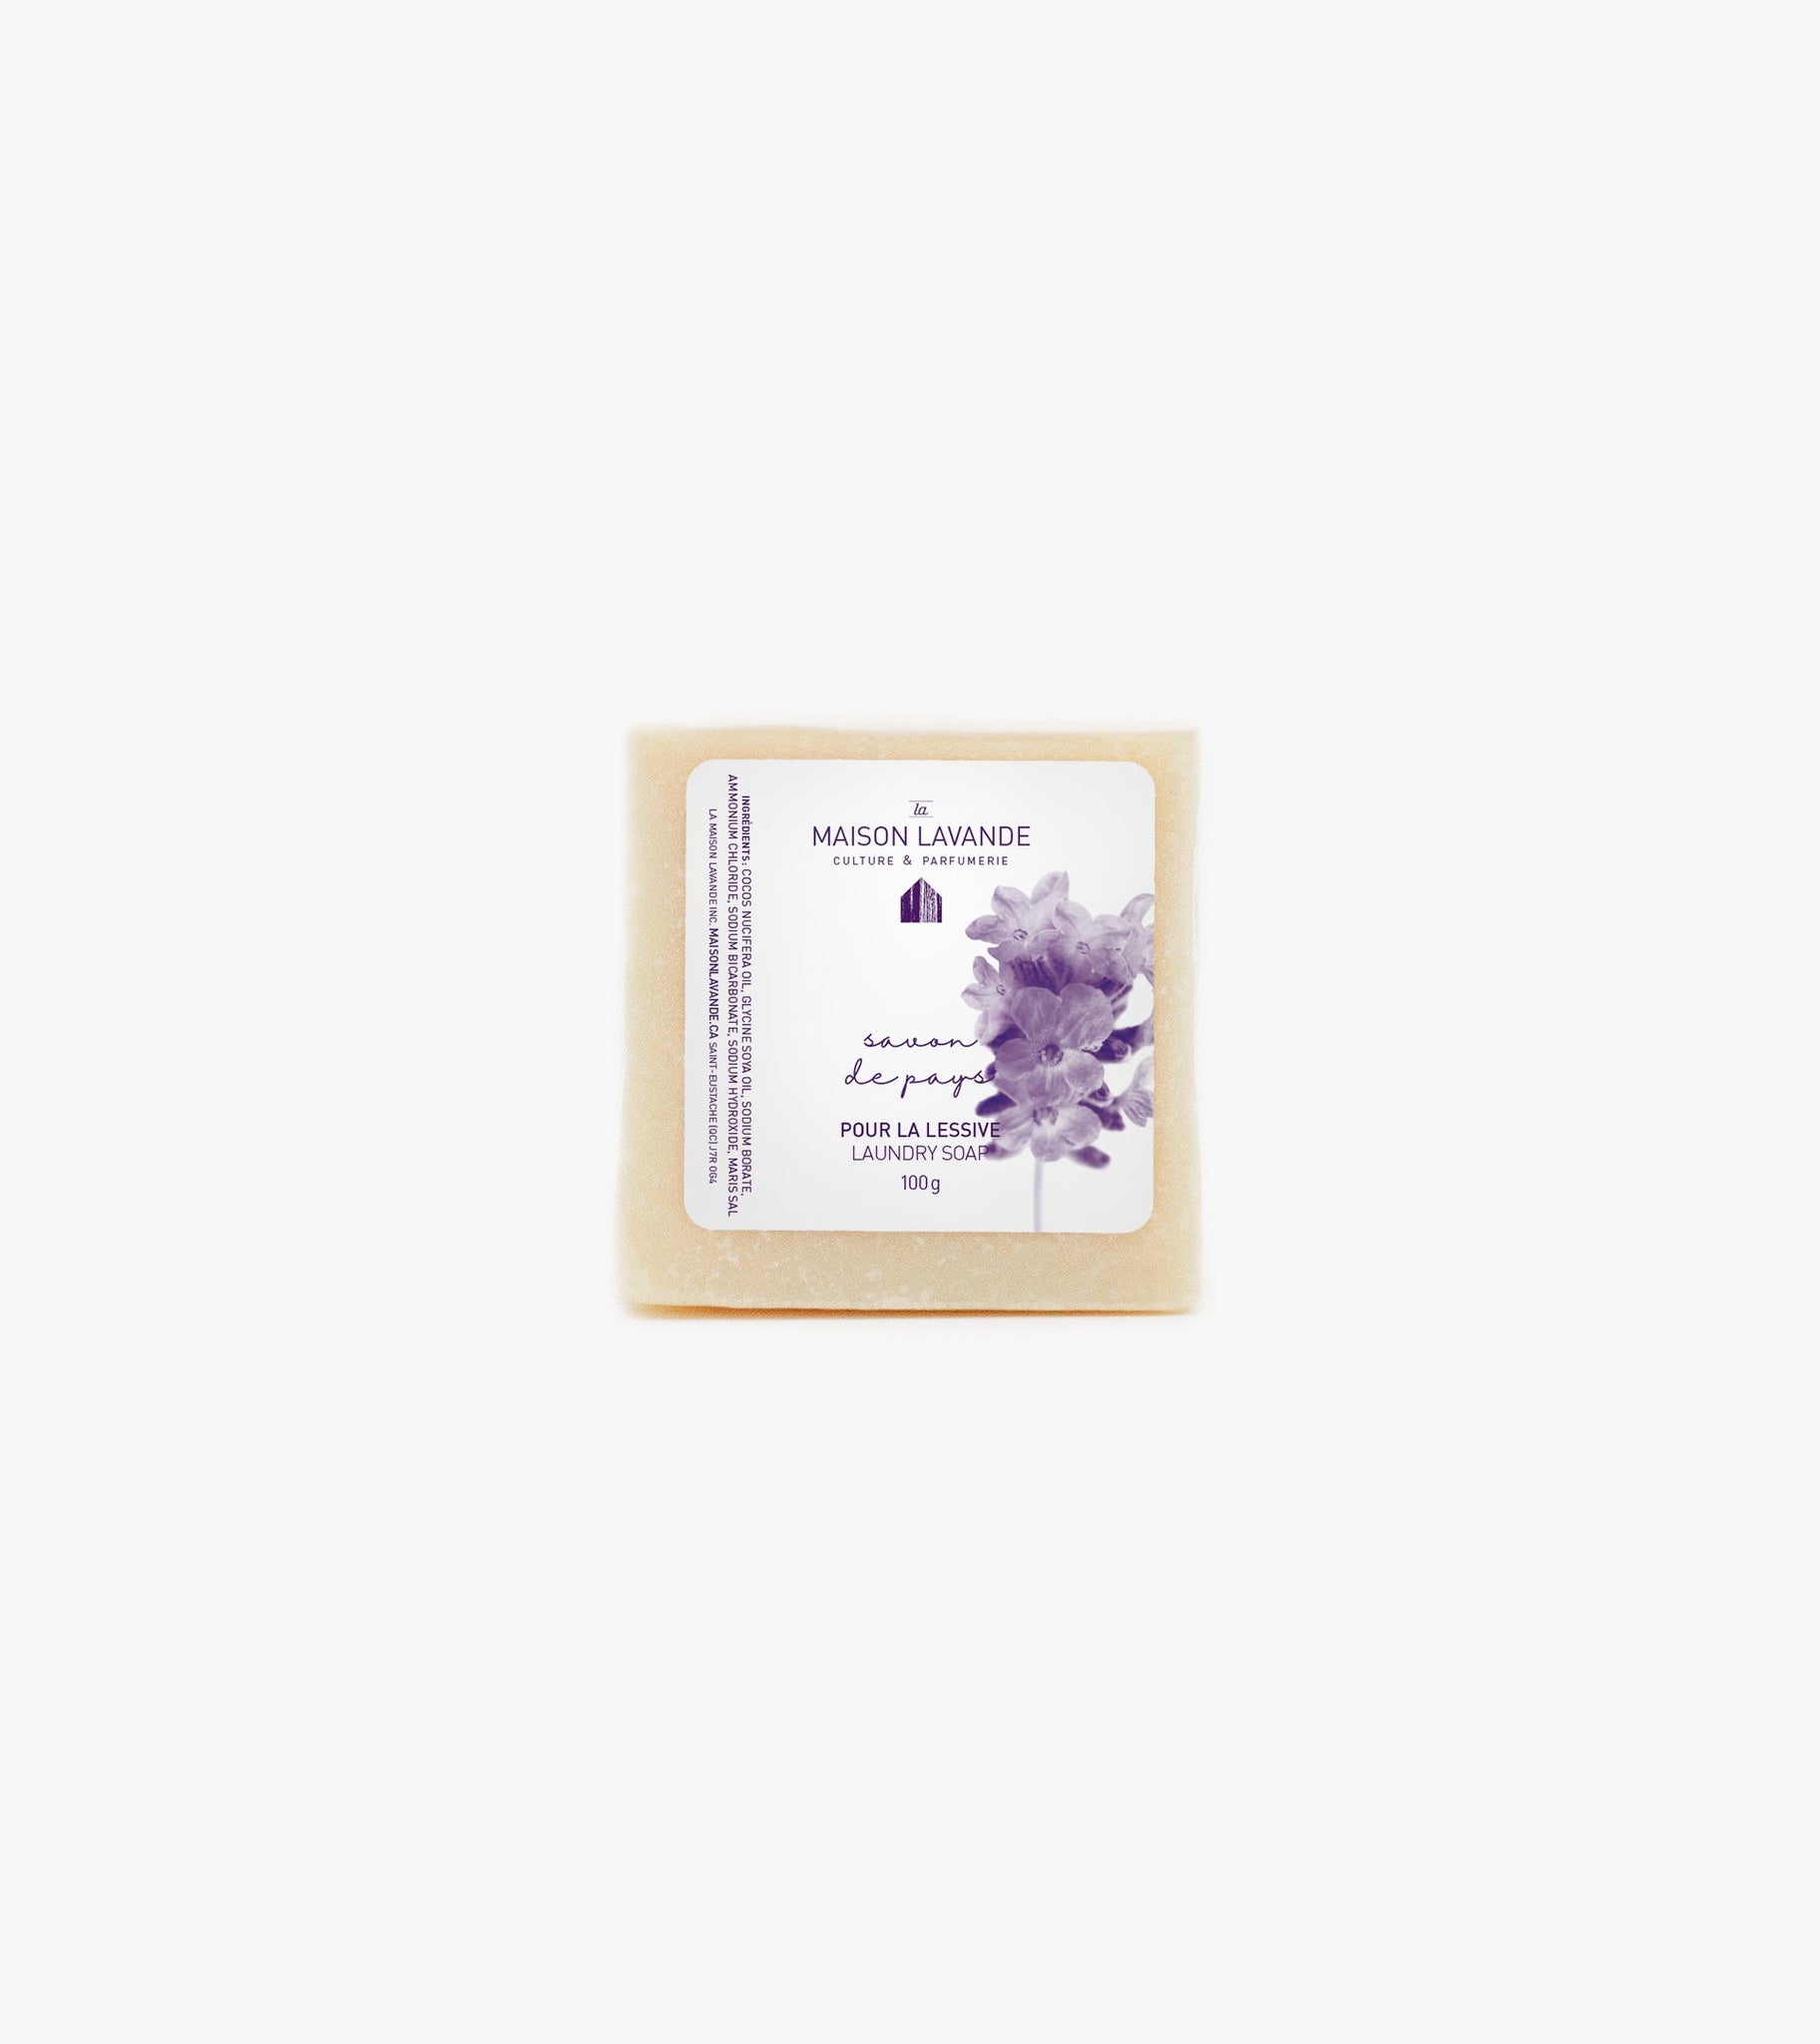 Savon de pays - Pure Lavande||Laundry soap - Pure Lavender